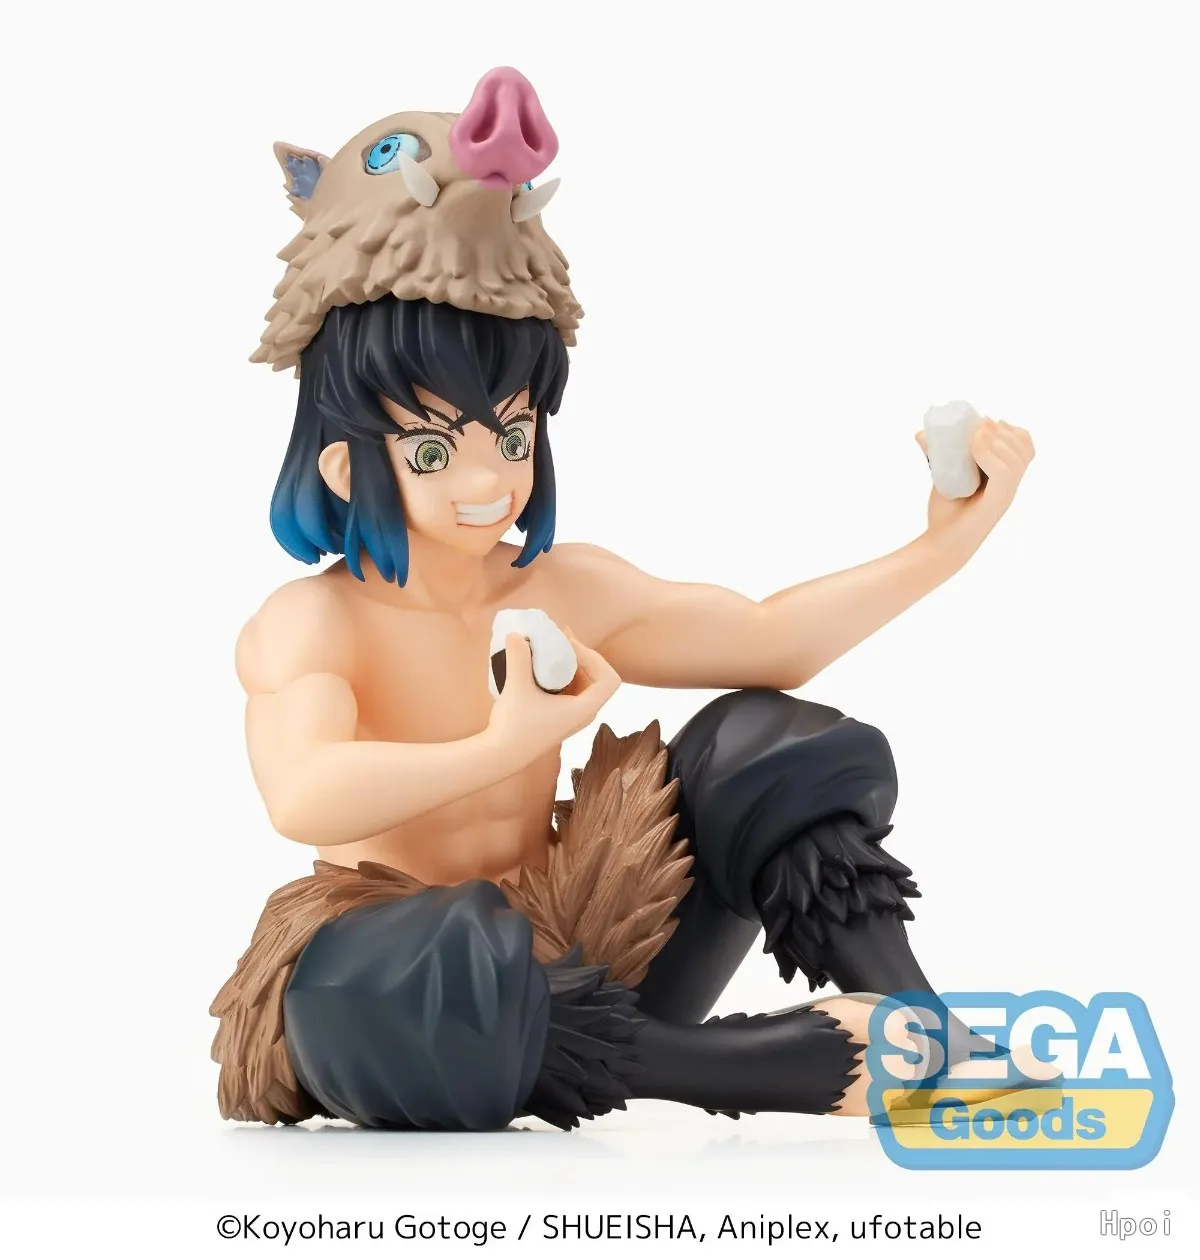 Sega Premium Perching Figure Demon Slayer Kimetsu no Yaiba Zenitsu Agatsuma